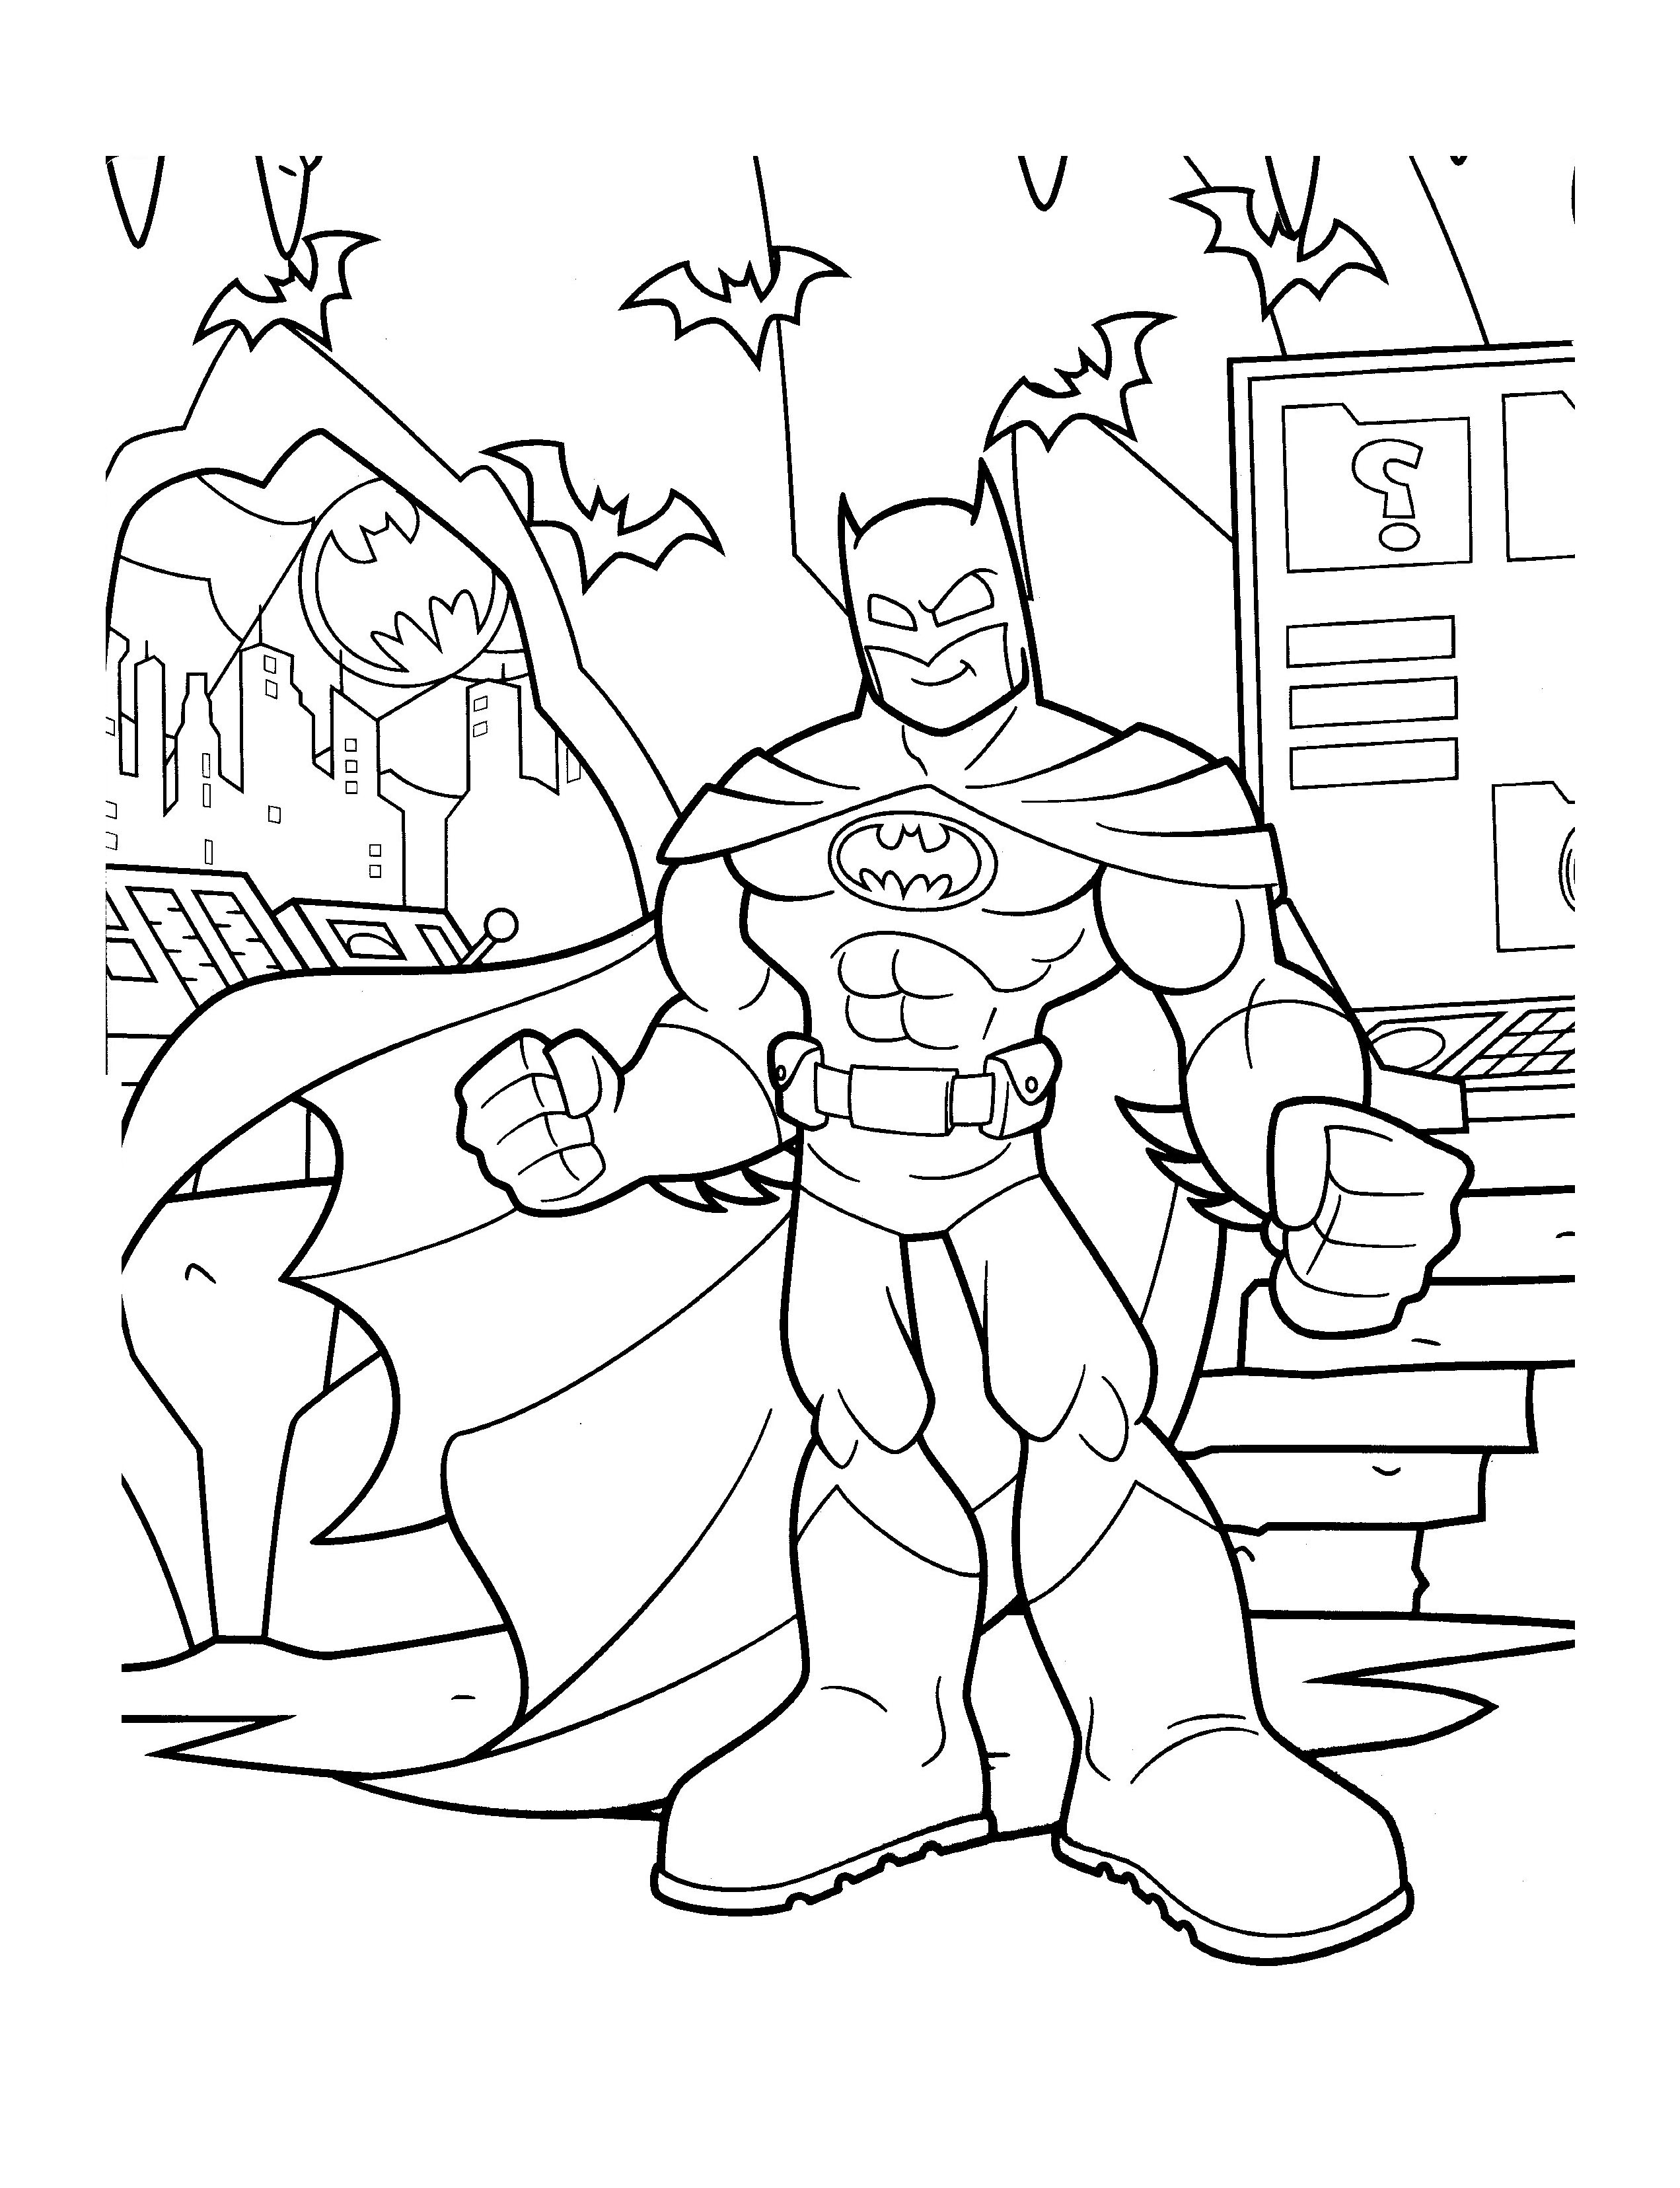 Batman coloring pages to download - Batman Kids Coloring Pages